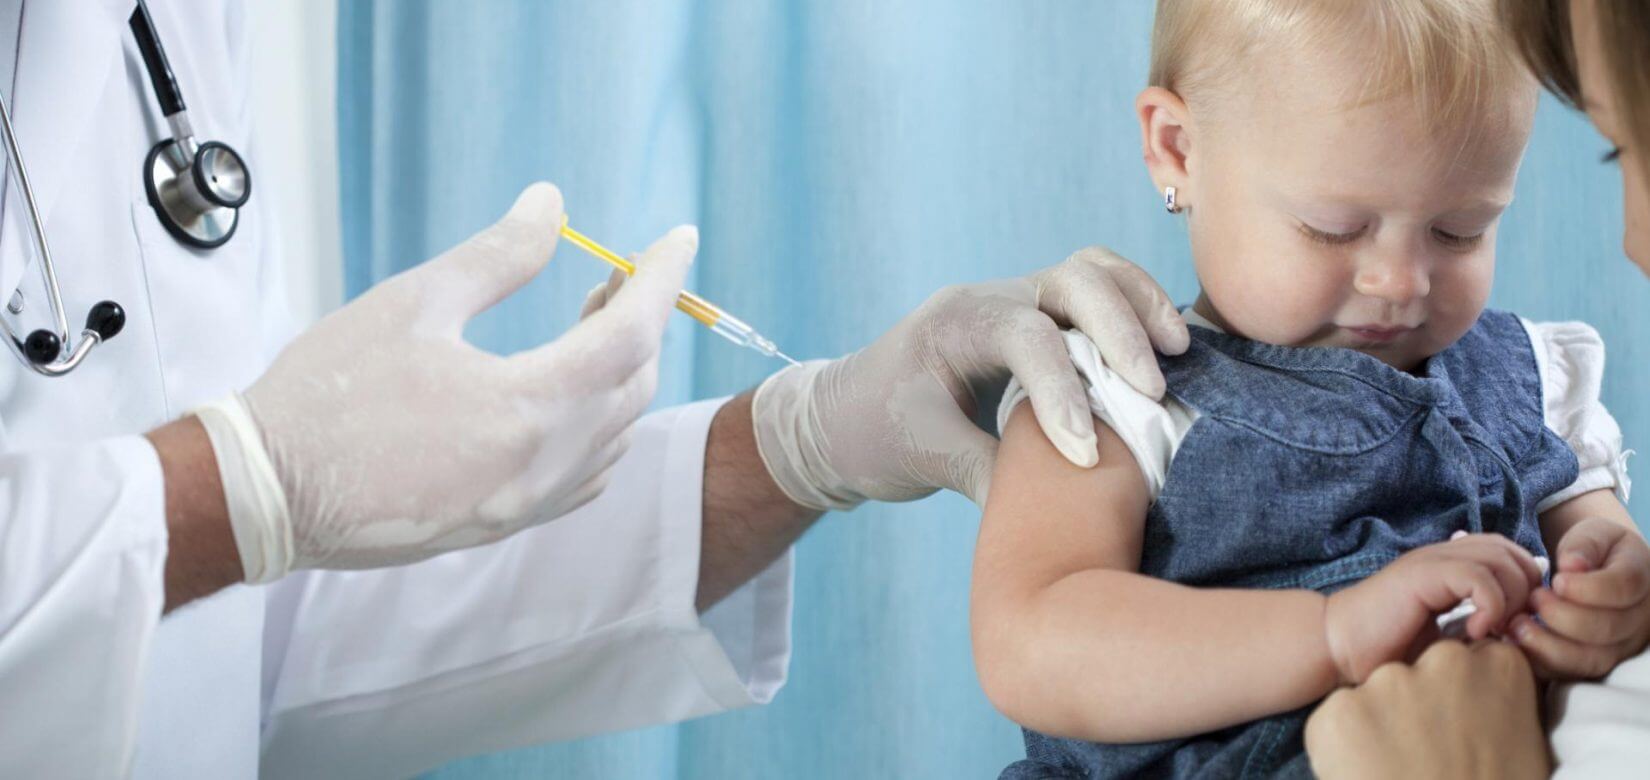 Κορονοϊός - Moderna: Ζήτησε άδεια για εμβολιασμό παιδιών από έξι μηνών